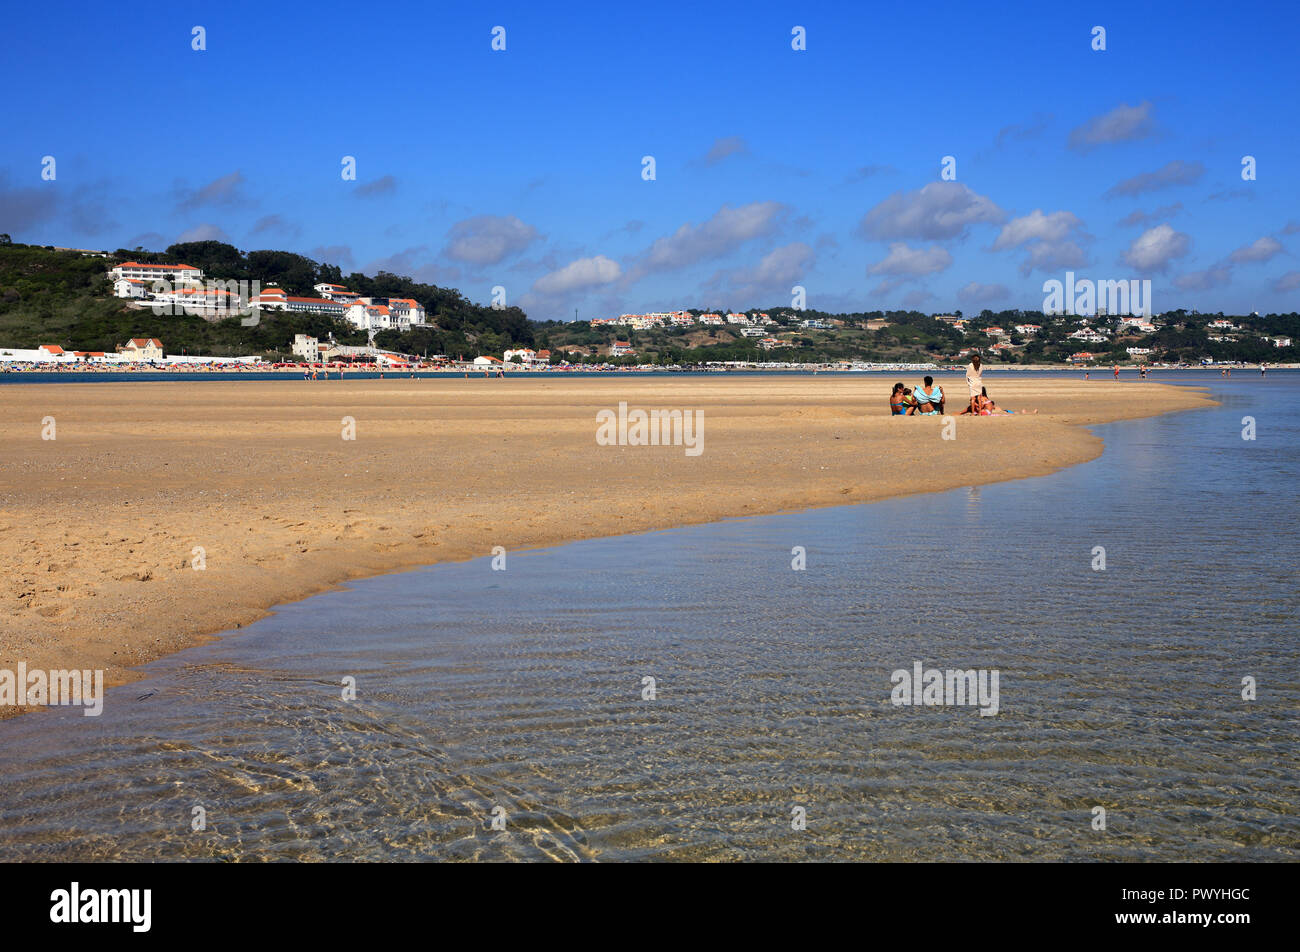 Il Portogallo, Caldas de Rainha, Lagoa de Obidos o Obidos laguna e la città di vacanze di Foz do Arelho. Acqua cristallina con la bassa marea. Foto Stock